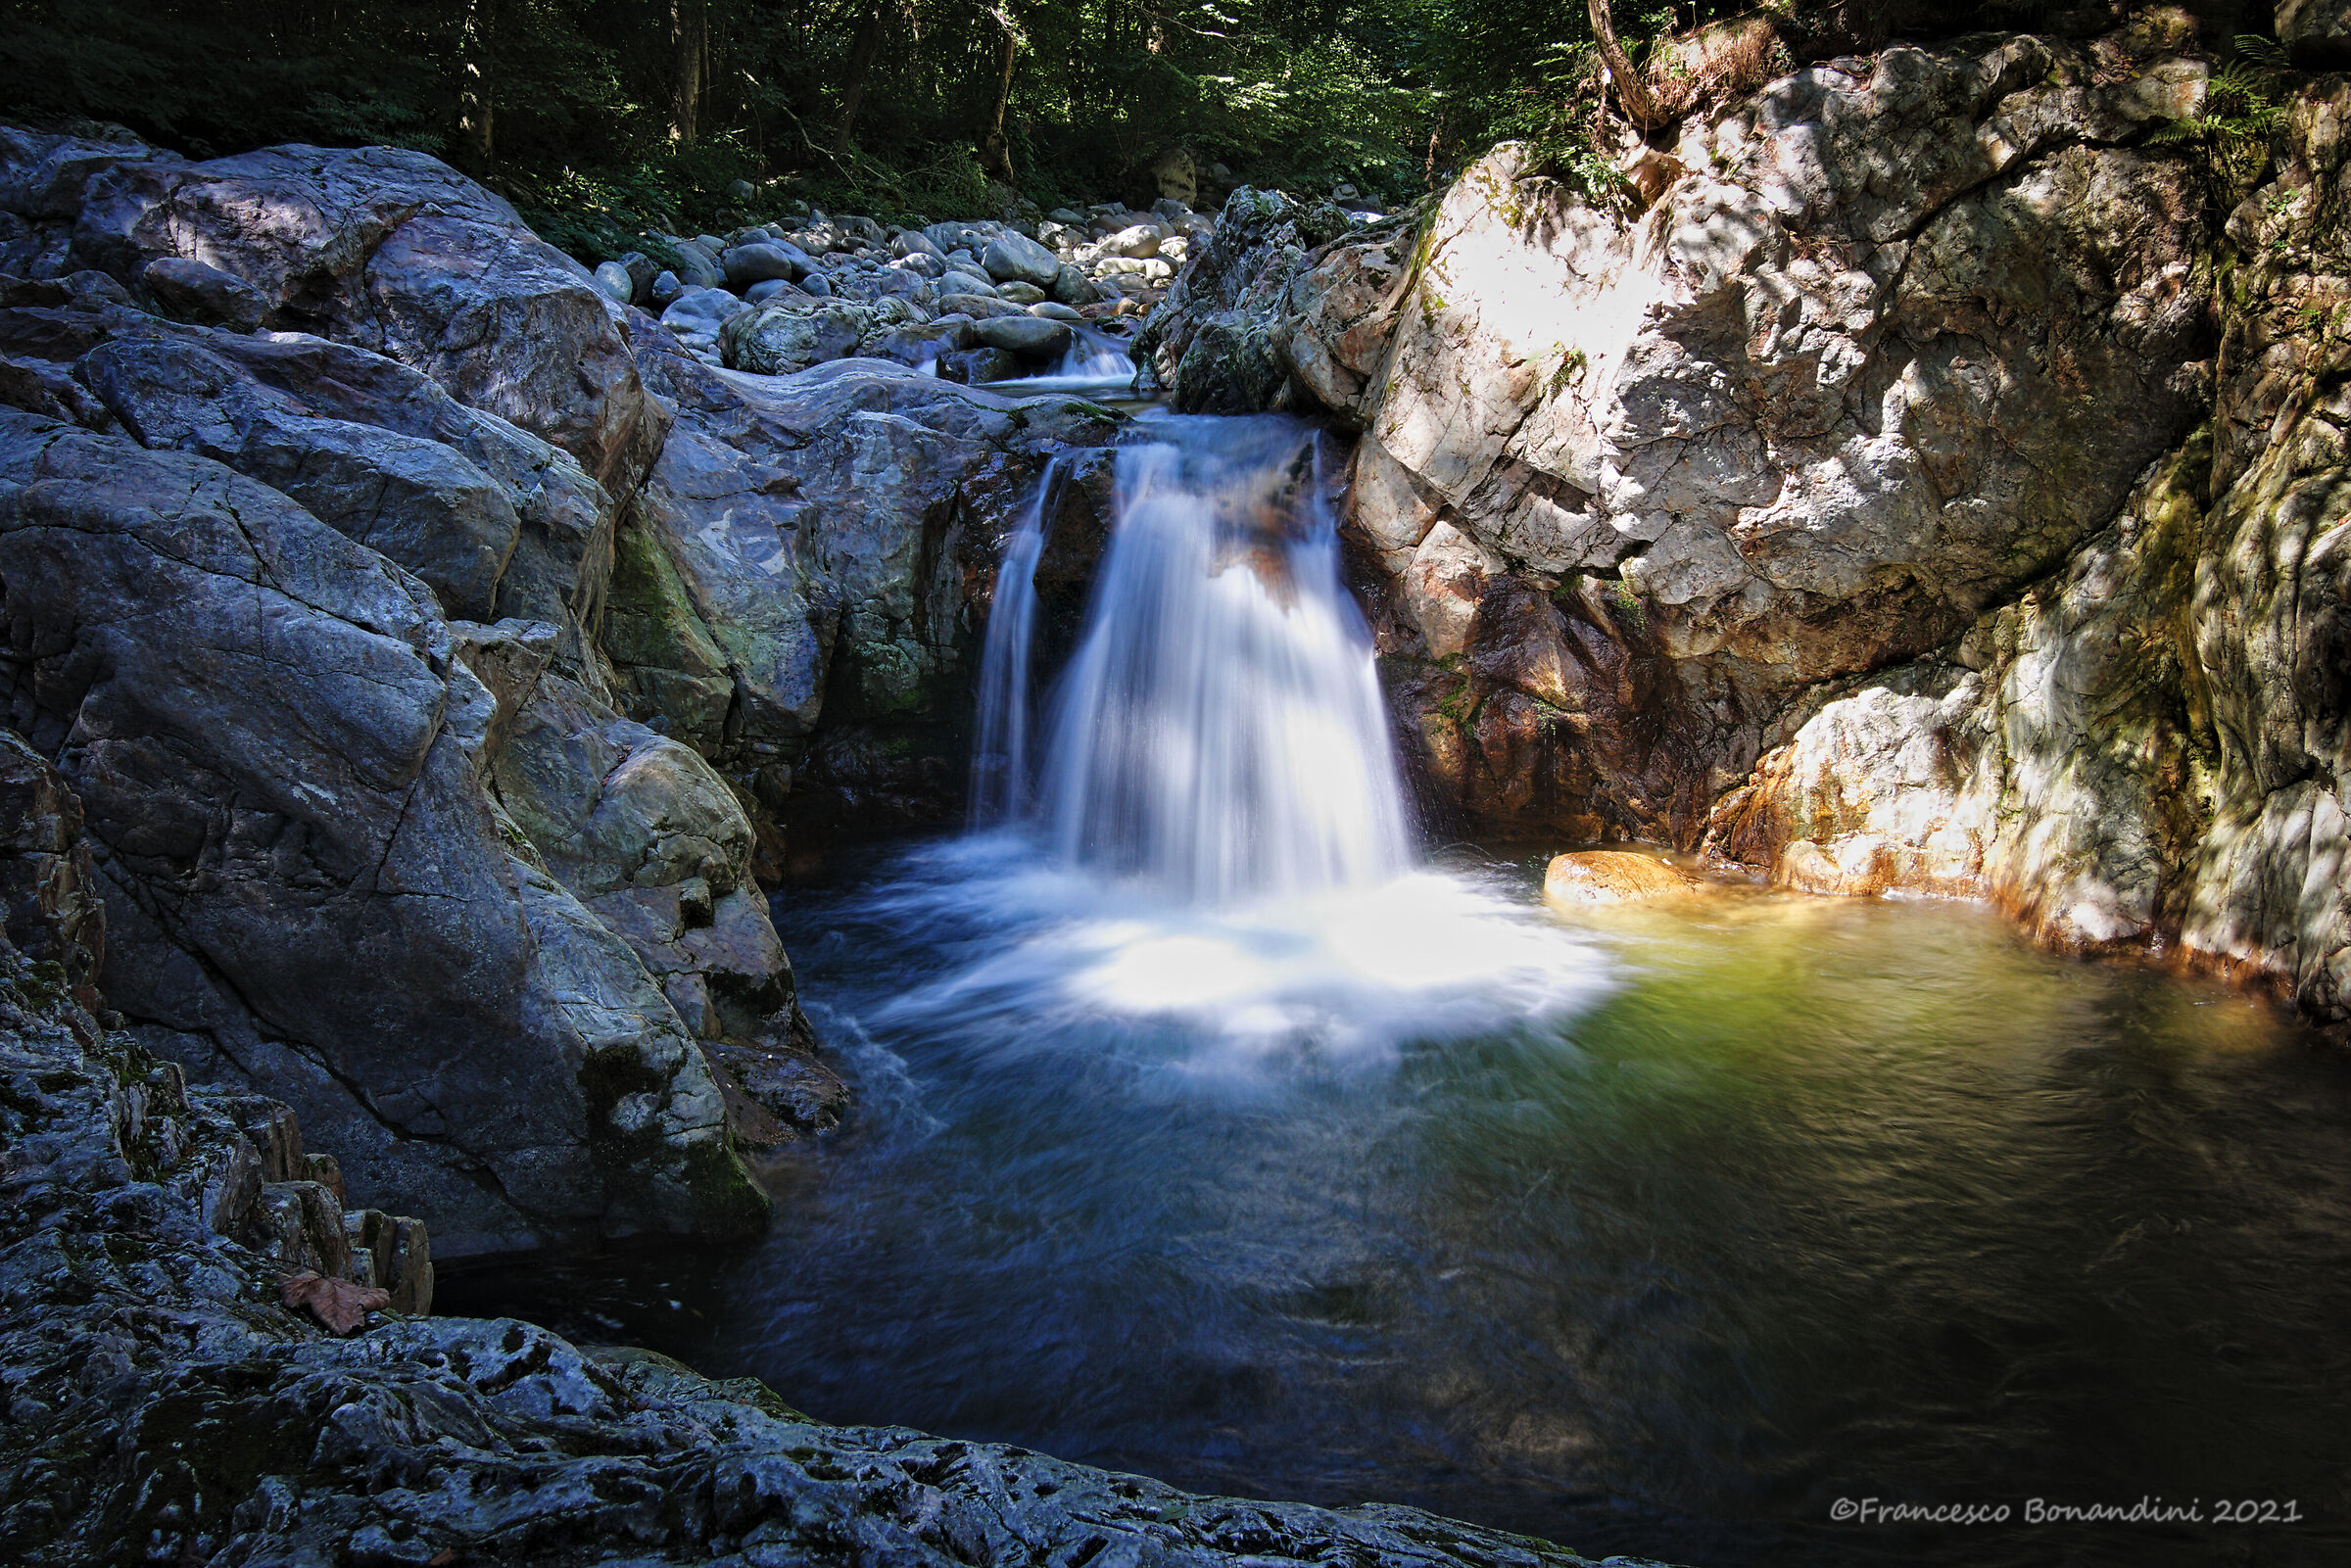 The Gorgomoro waterfall...